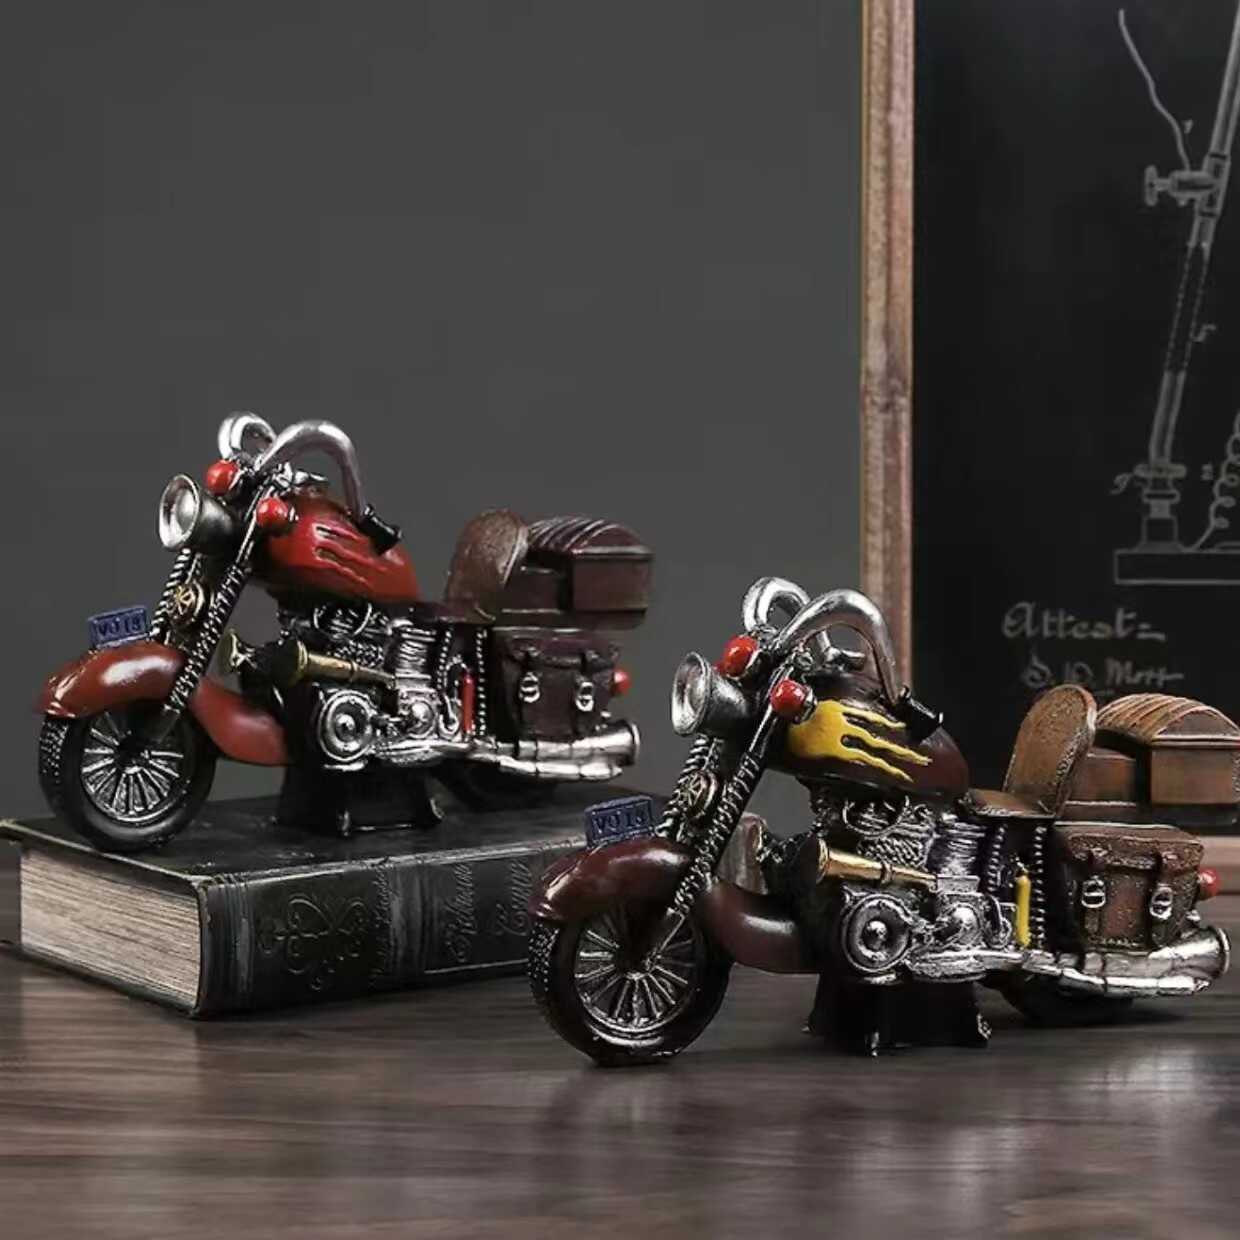 摩托车模型摆件仿真树脂机车手工桌面创意个性复古装饰品生日礼物